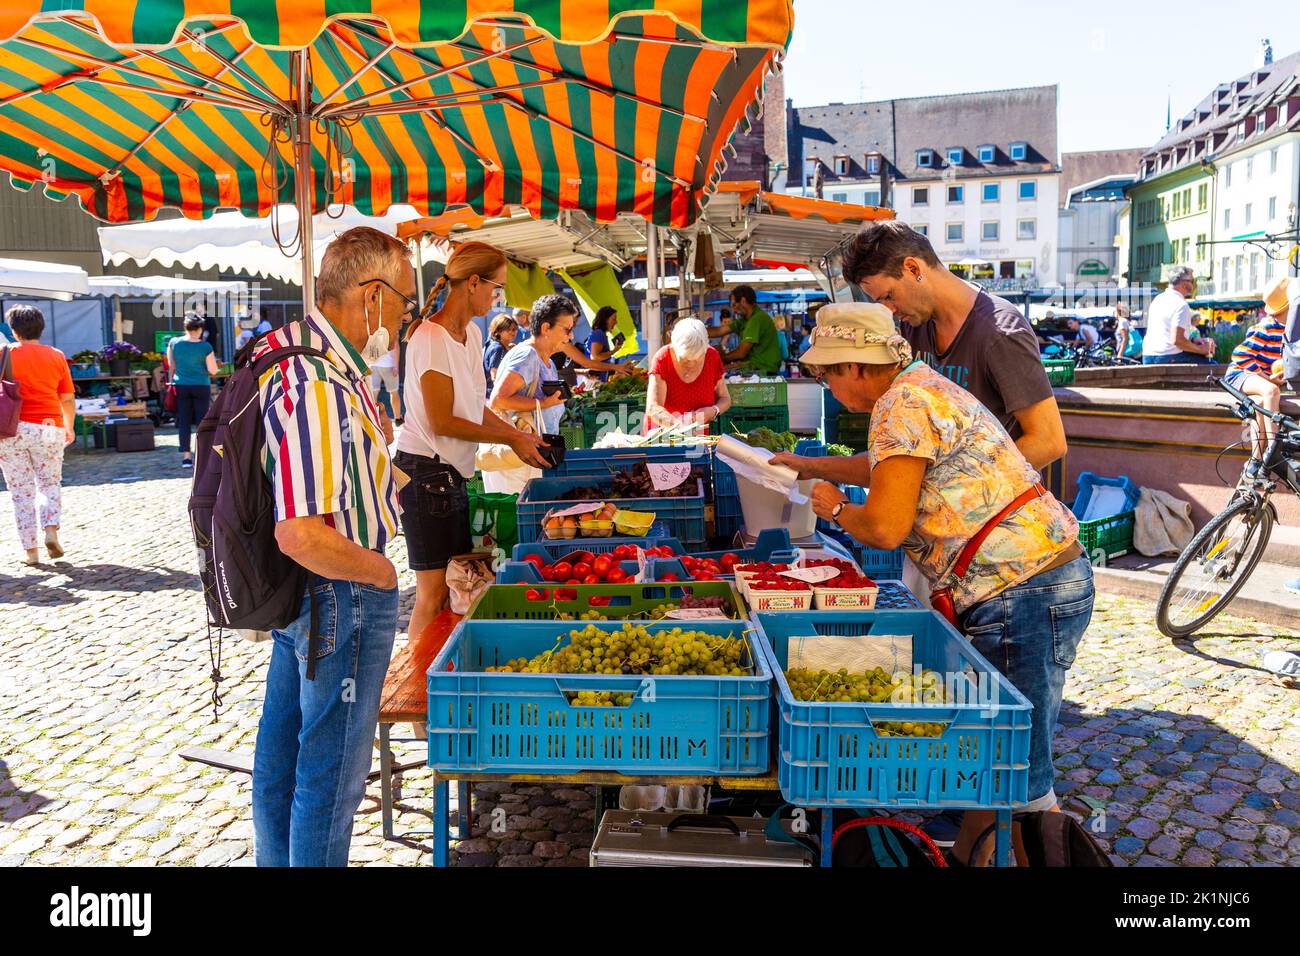 Les gens font du shopping dans un stand de fruits et légumes au marché de Münstermarkt sur la Münsterplatz, Freiburg im Breisgau, Allemagne Banque D'Images